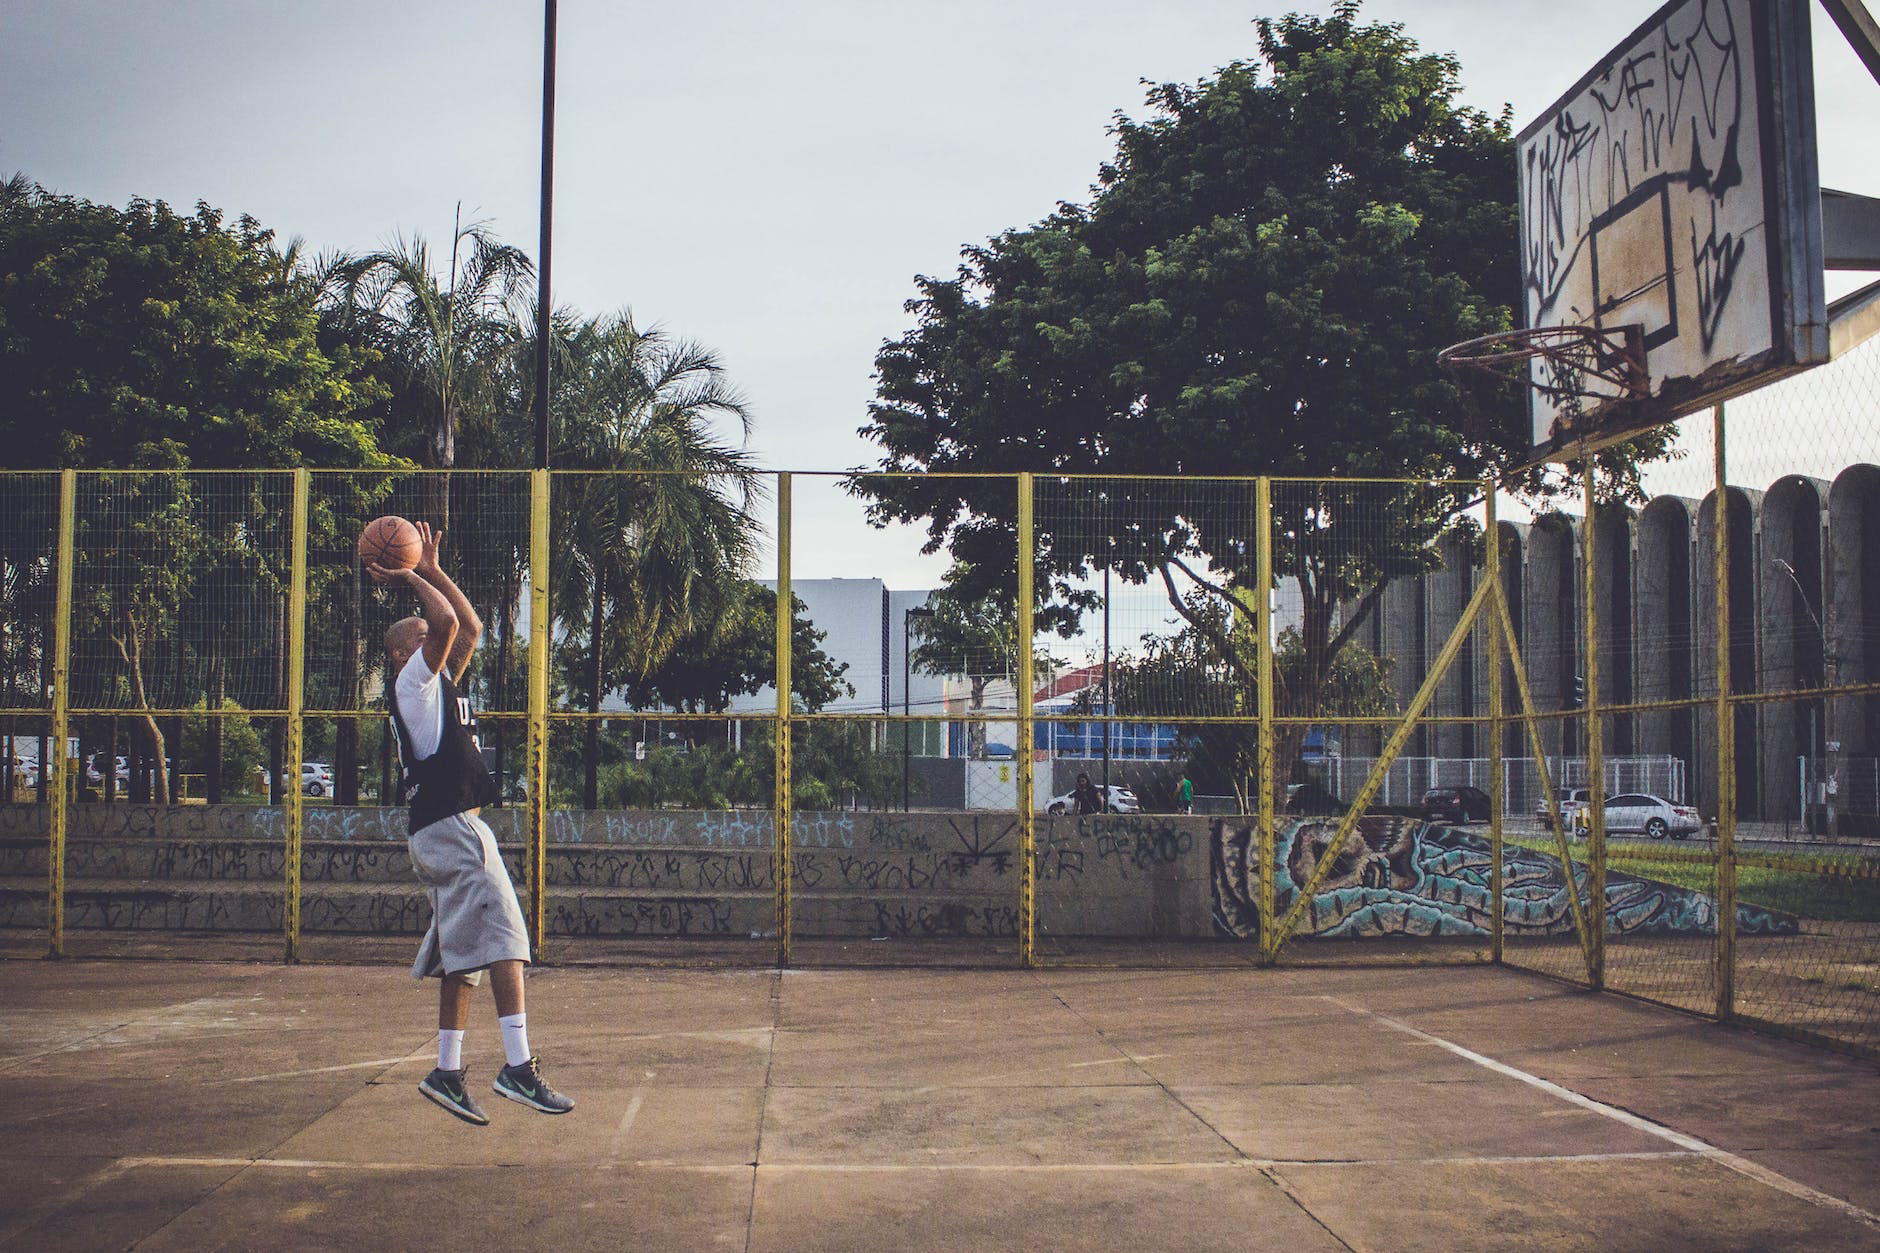 A man dunks a basketball in an outdoor court.